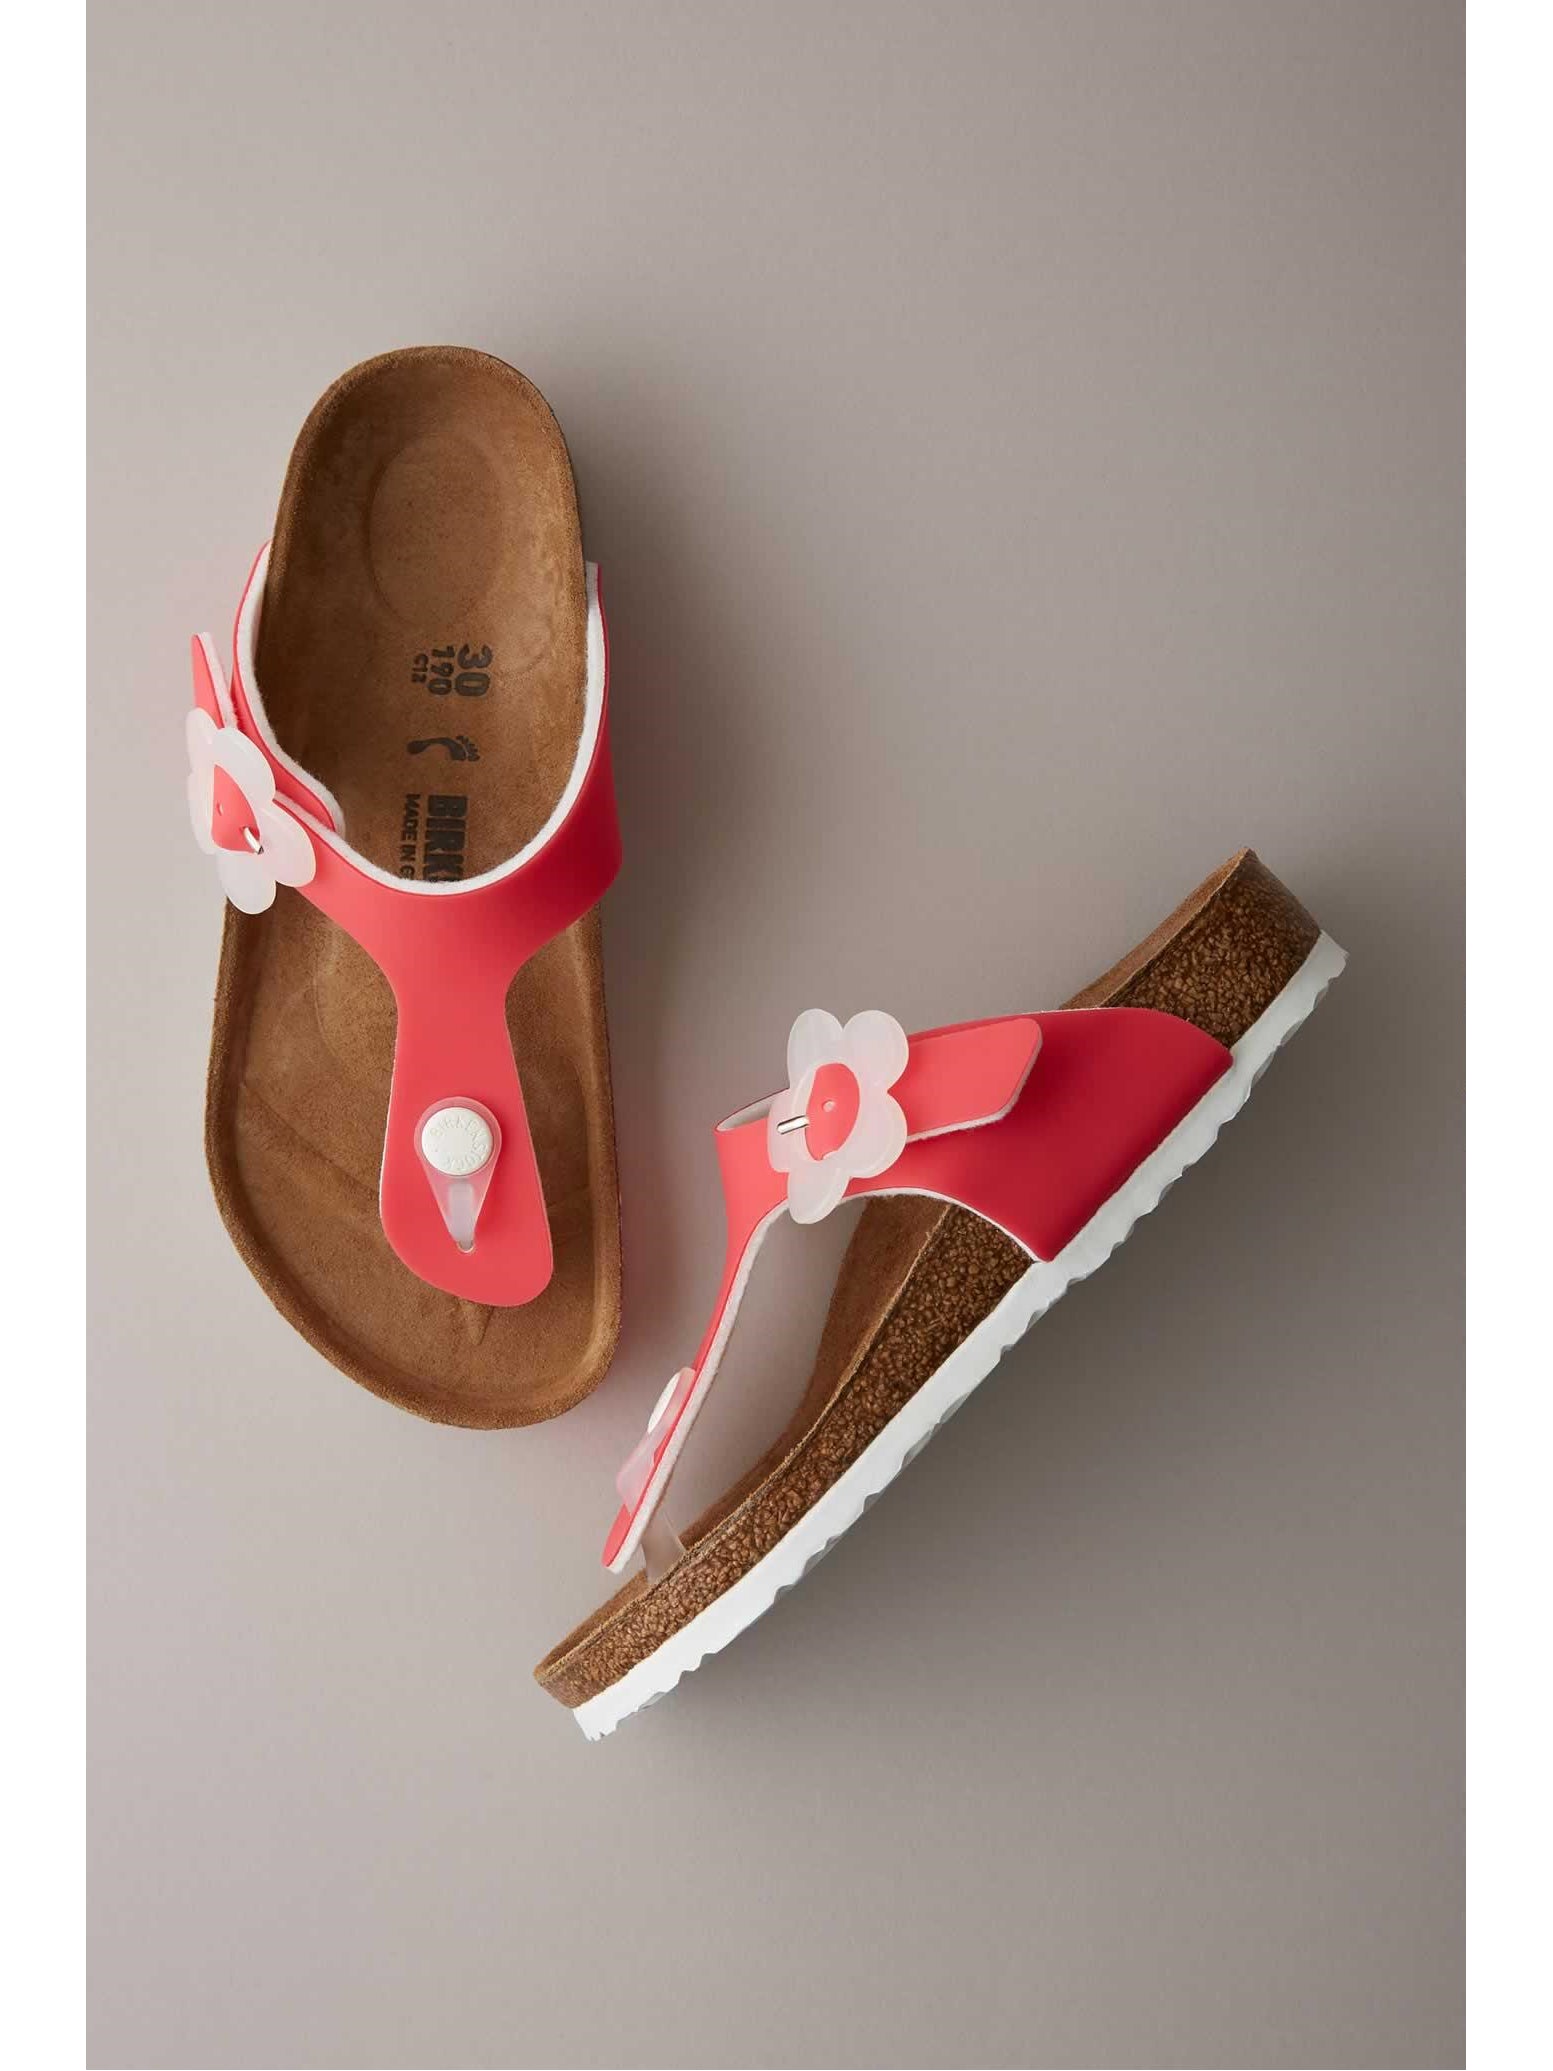 birkenstock flower sandals